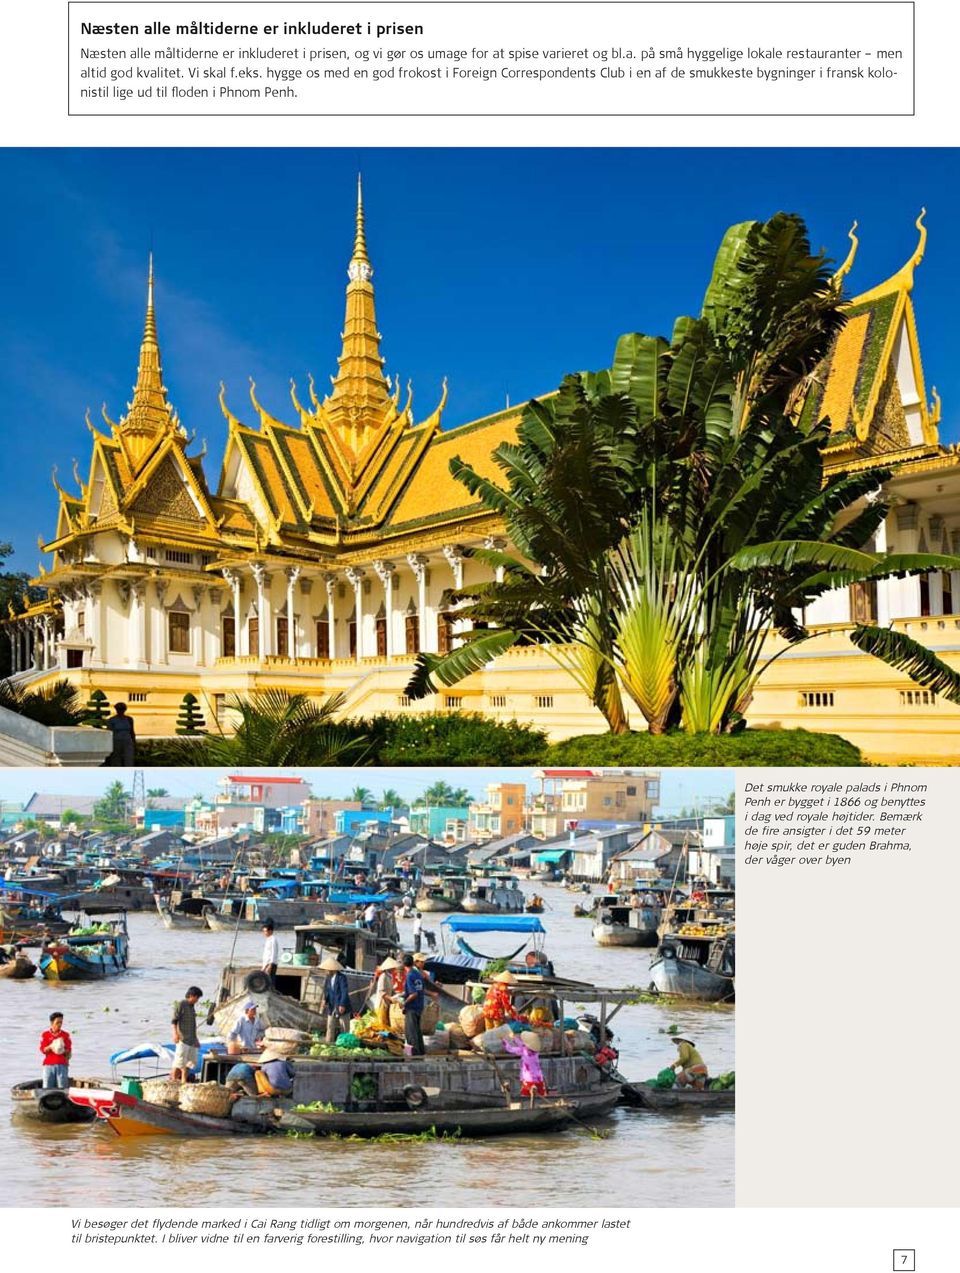 Det smukke royale palads i Phnom Penh er bygget i 1866 og benyttes i dag ved royale højtider.